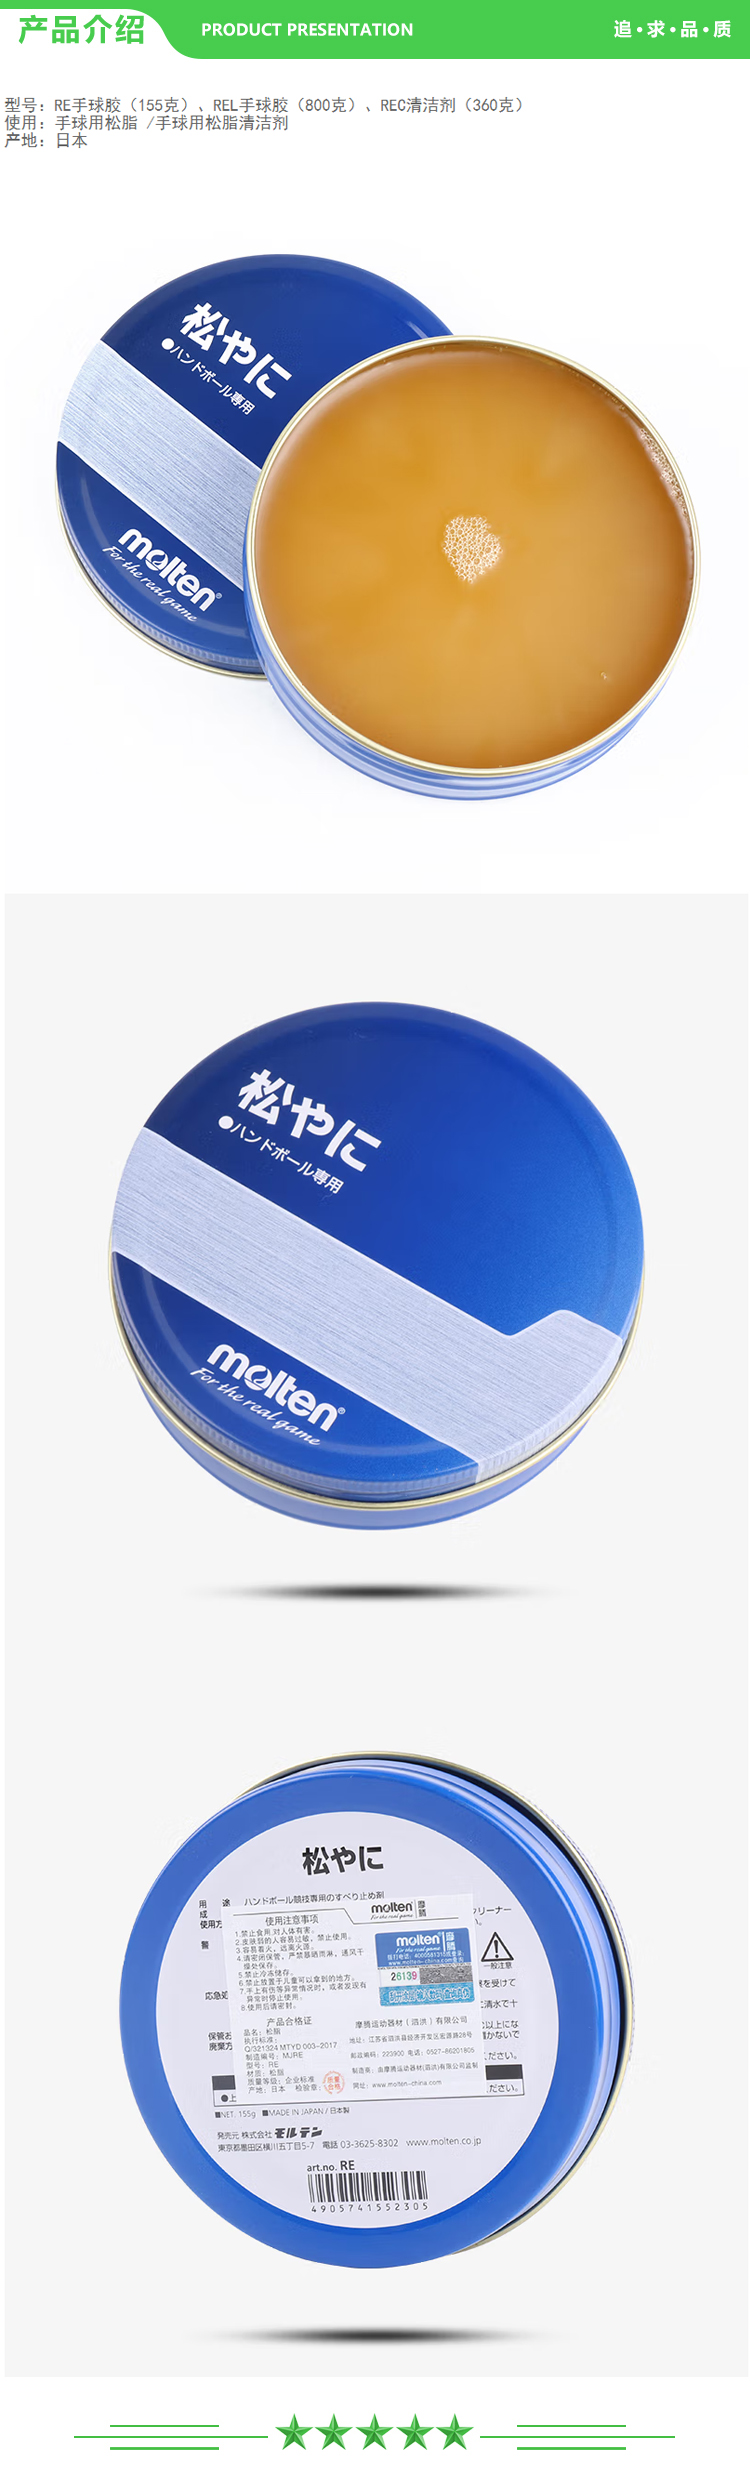 摩腾 molten REC手球清洁剂 含量360g 手球胶手球用松脂清洁剂比赛训练专用器材.jpg